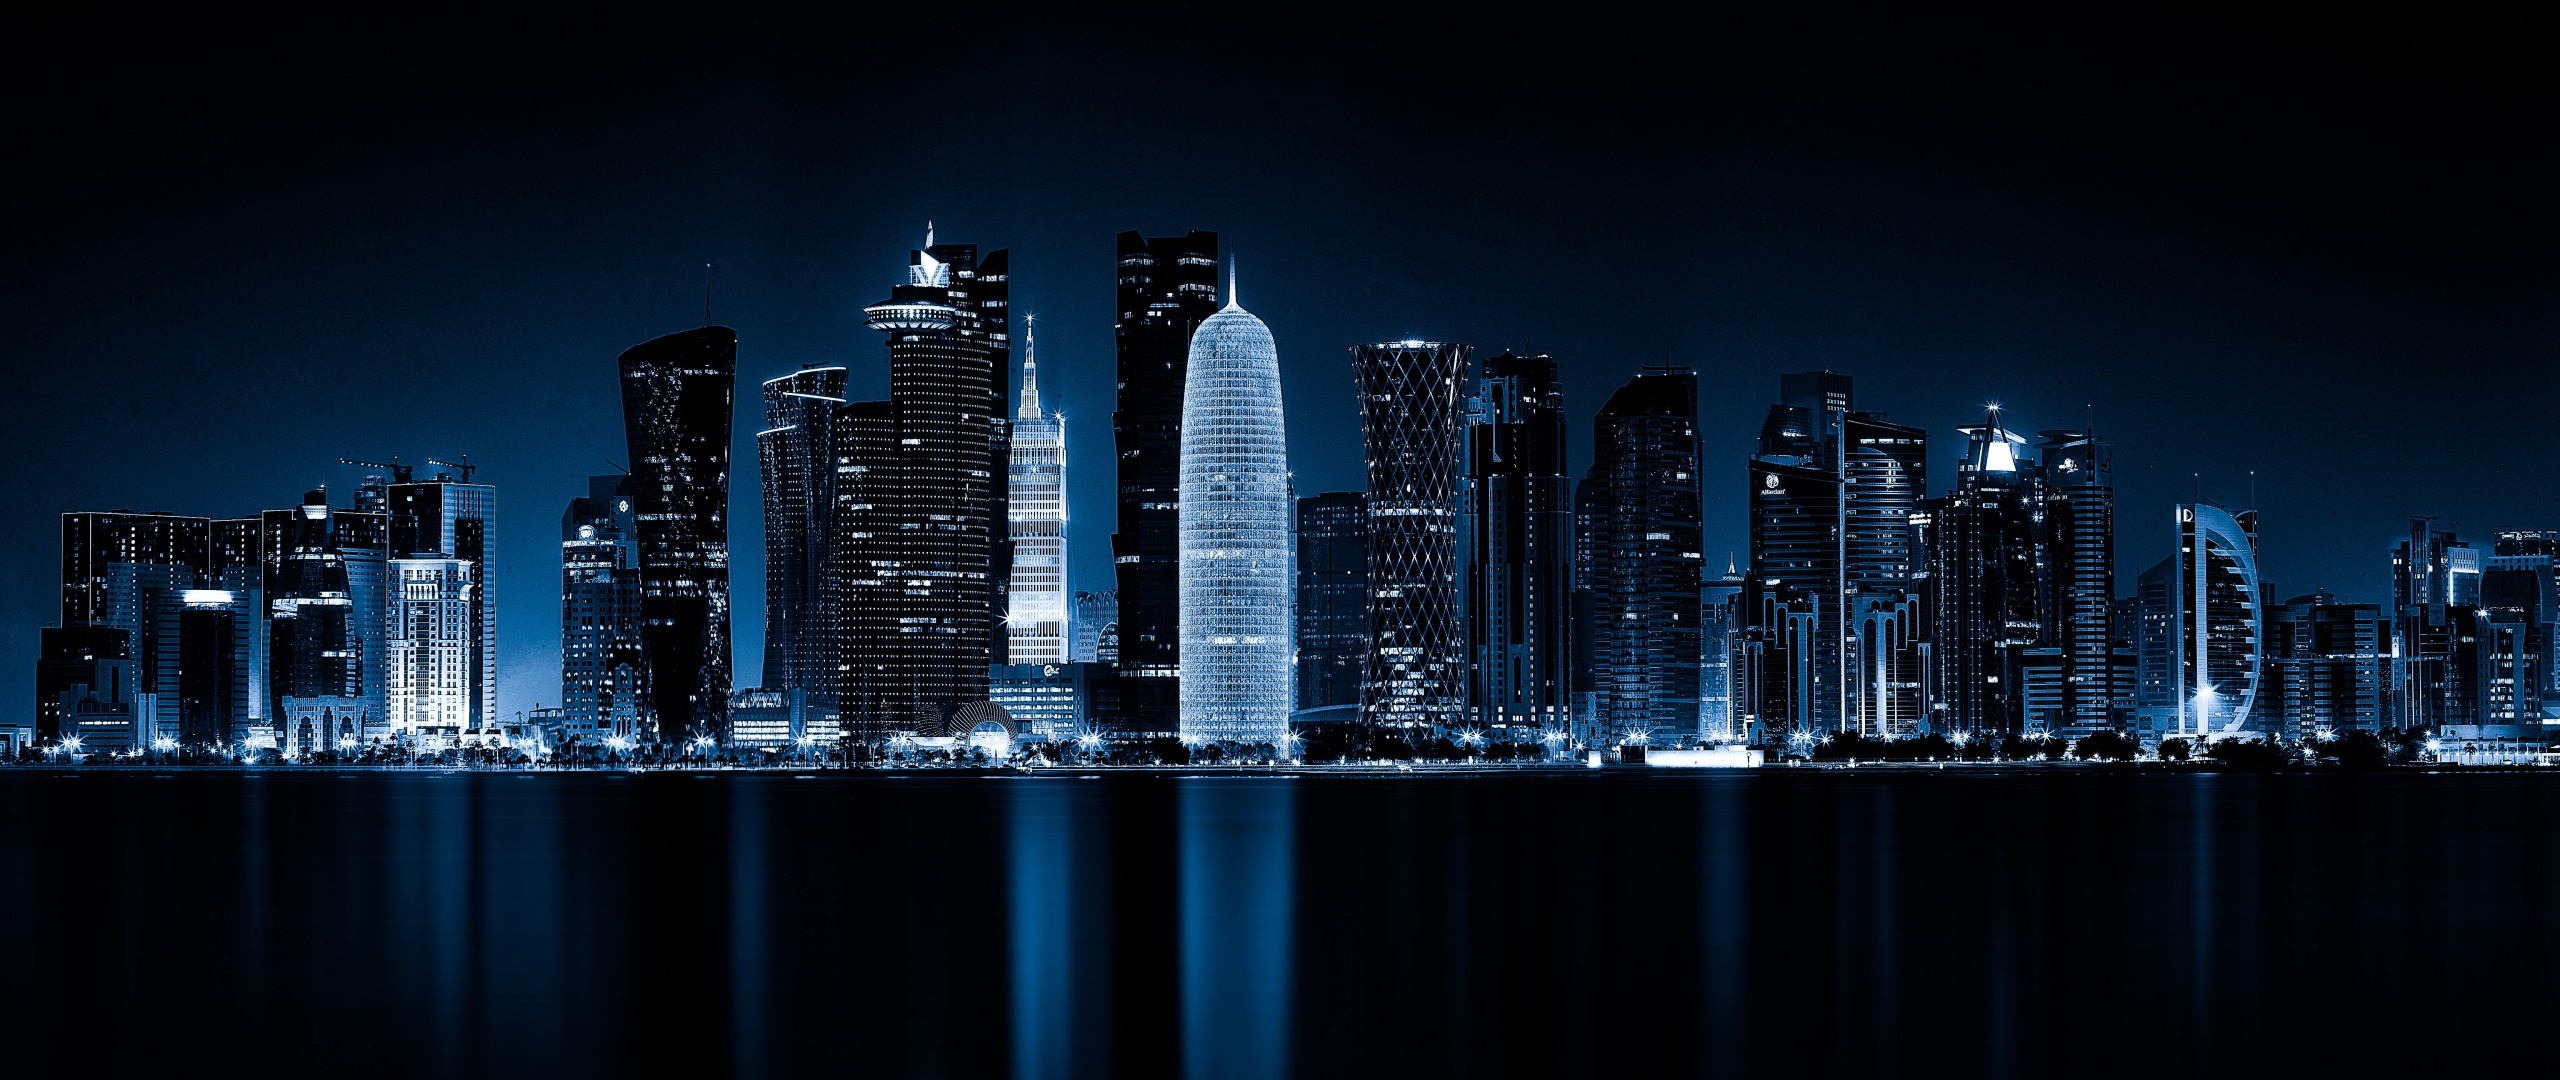 Đêm Đô ha, Qatar là một cảm giác thật sự đặc biệt khi nhìn ngắm toàn cảnh thành phố lung linh ánh đèn. Với hình nền chất lượng 4K tuyệt đẹp, hình ảnh cityscape này sẽ cho bạn một góc nhìn vô cùng đặc biệt và ấn tượng về thế giới đêm của Qatar. Tải ngay hình nền này để trang trí cho màn hình của bạn thêm sinh động.